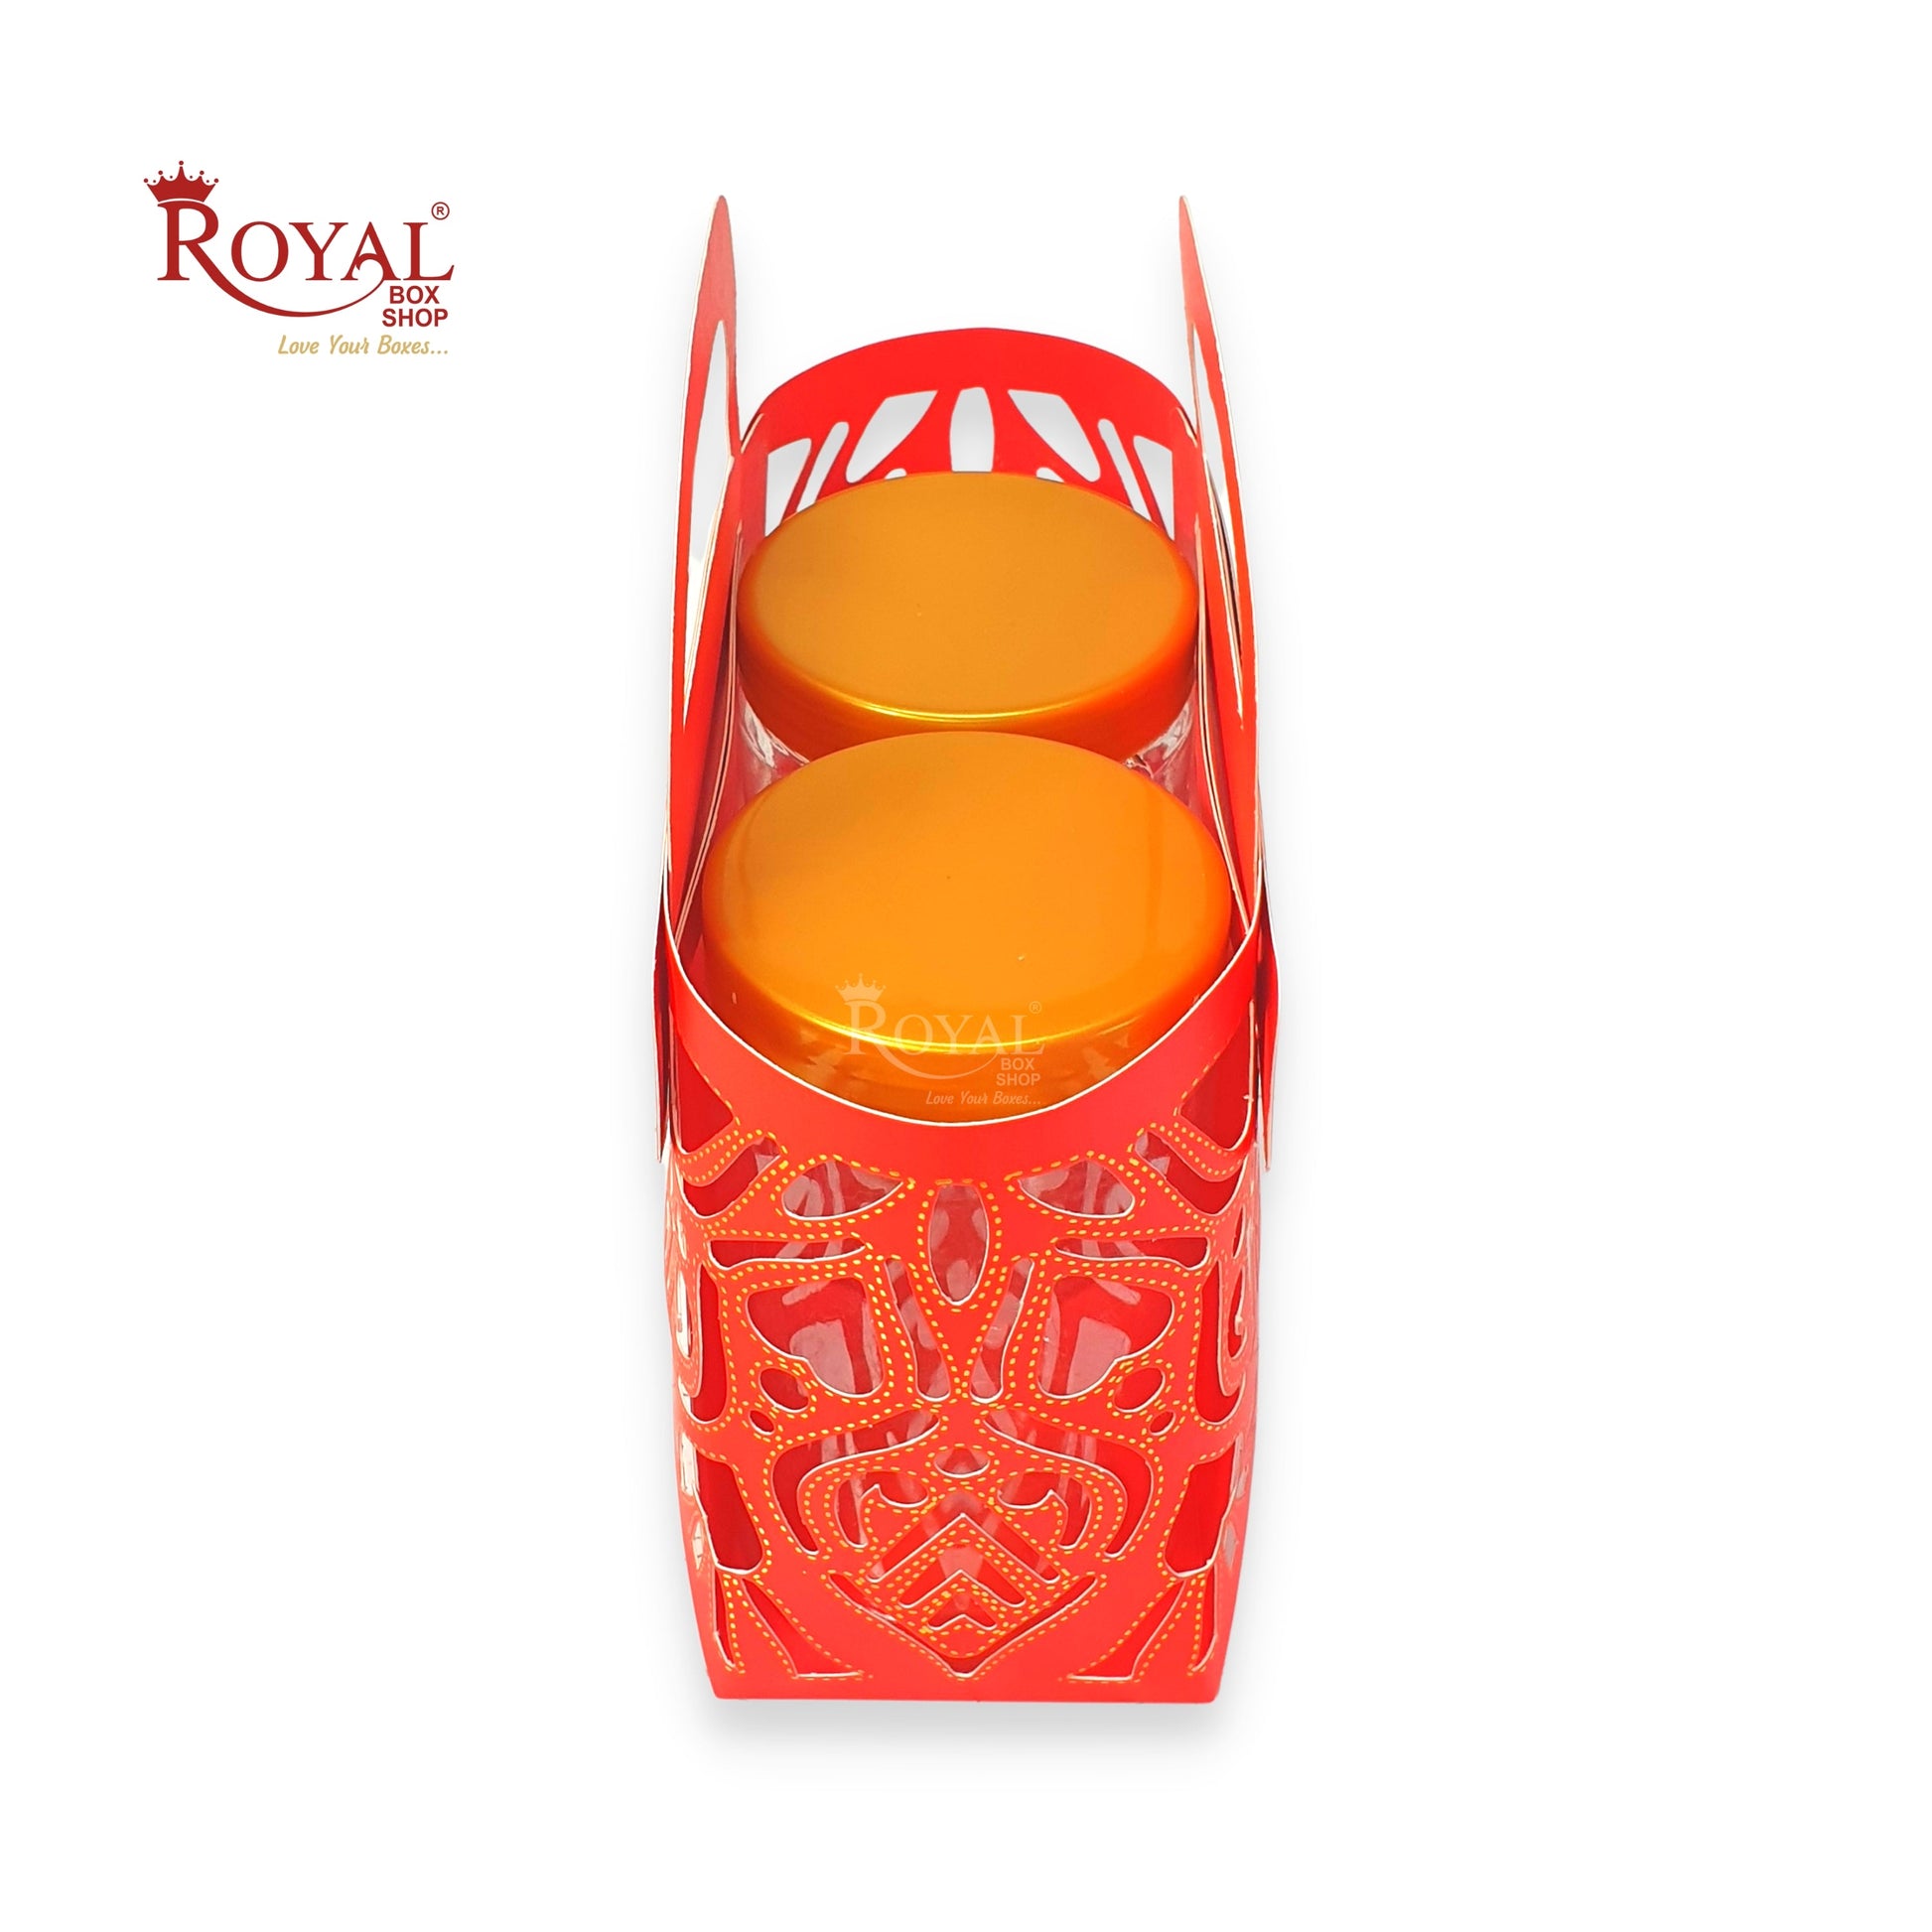 Royal 2 Jar Gift Hamper Bags I Laser Cut Gold Foiling I Red Color I Wedding, Corporate Birthday Return  Gifting Hamper Bags Royal Box Shop